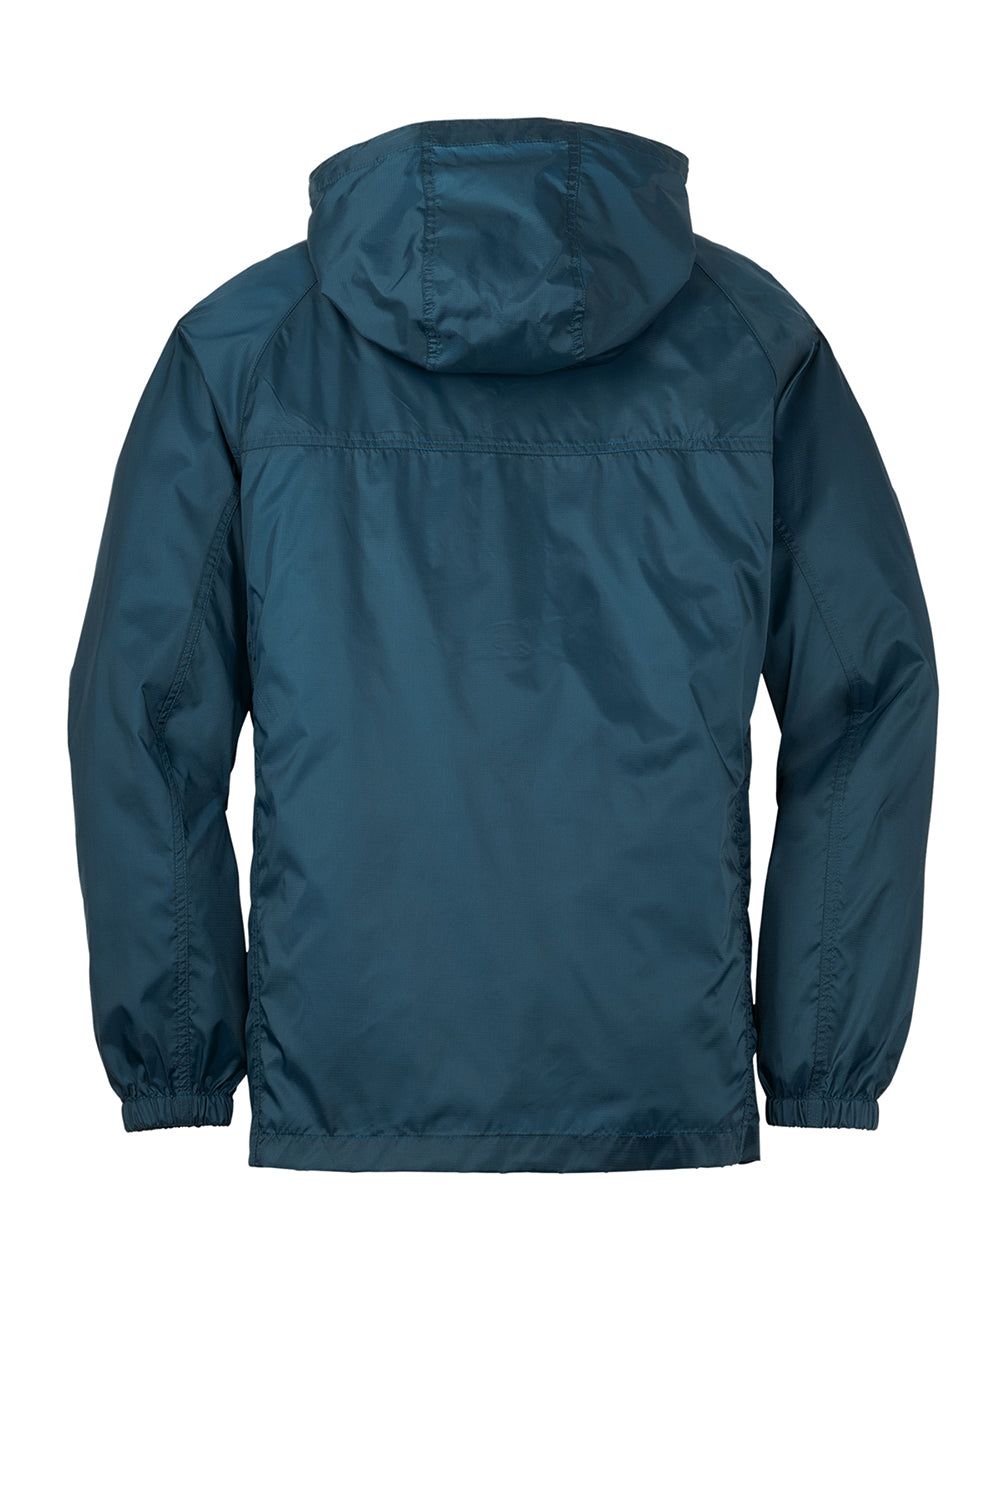 Eddie Bauer EB500 Mens Packable Wind Resistant Full Zip Hooded Jacket Adriatic Blue Flat Back